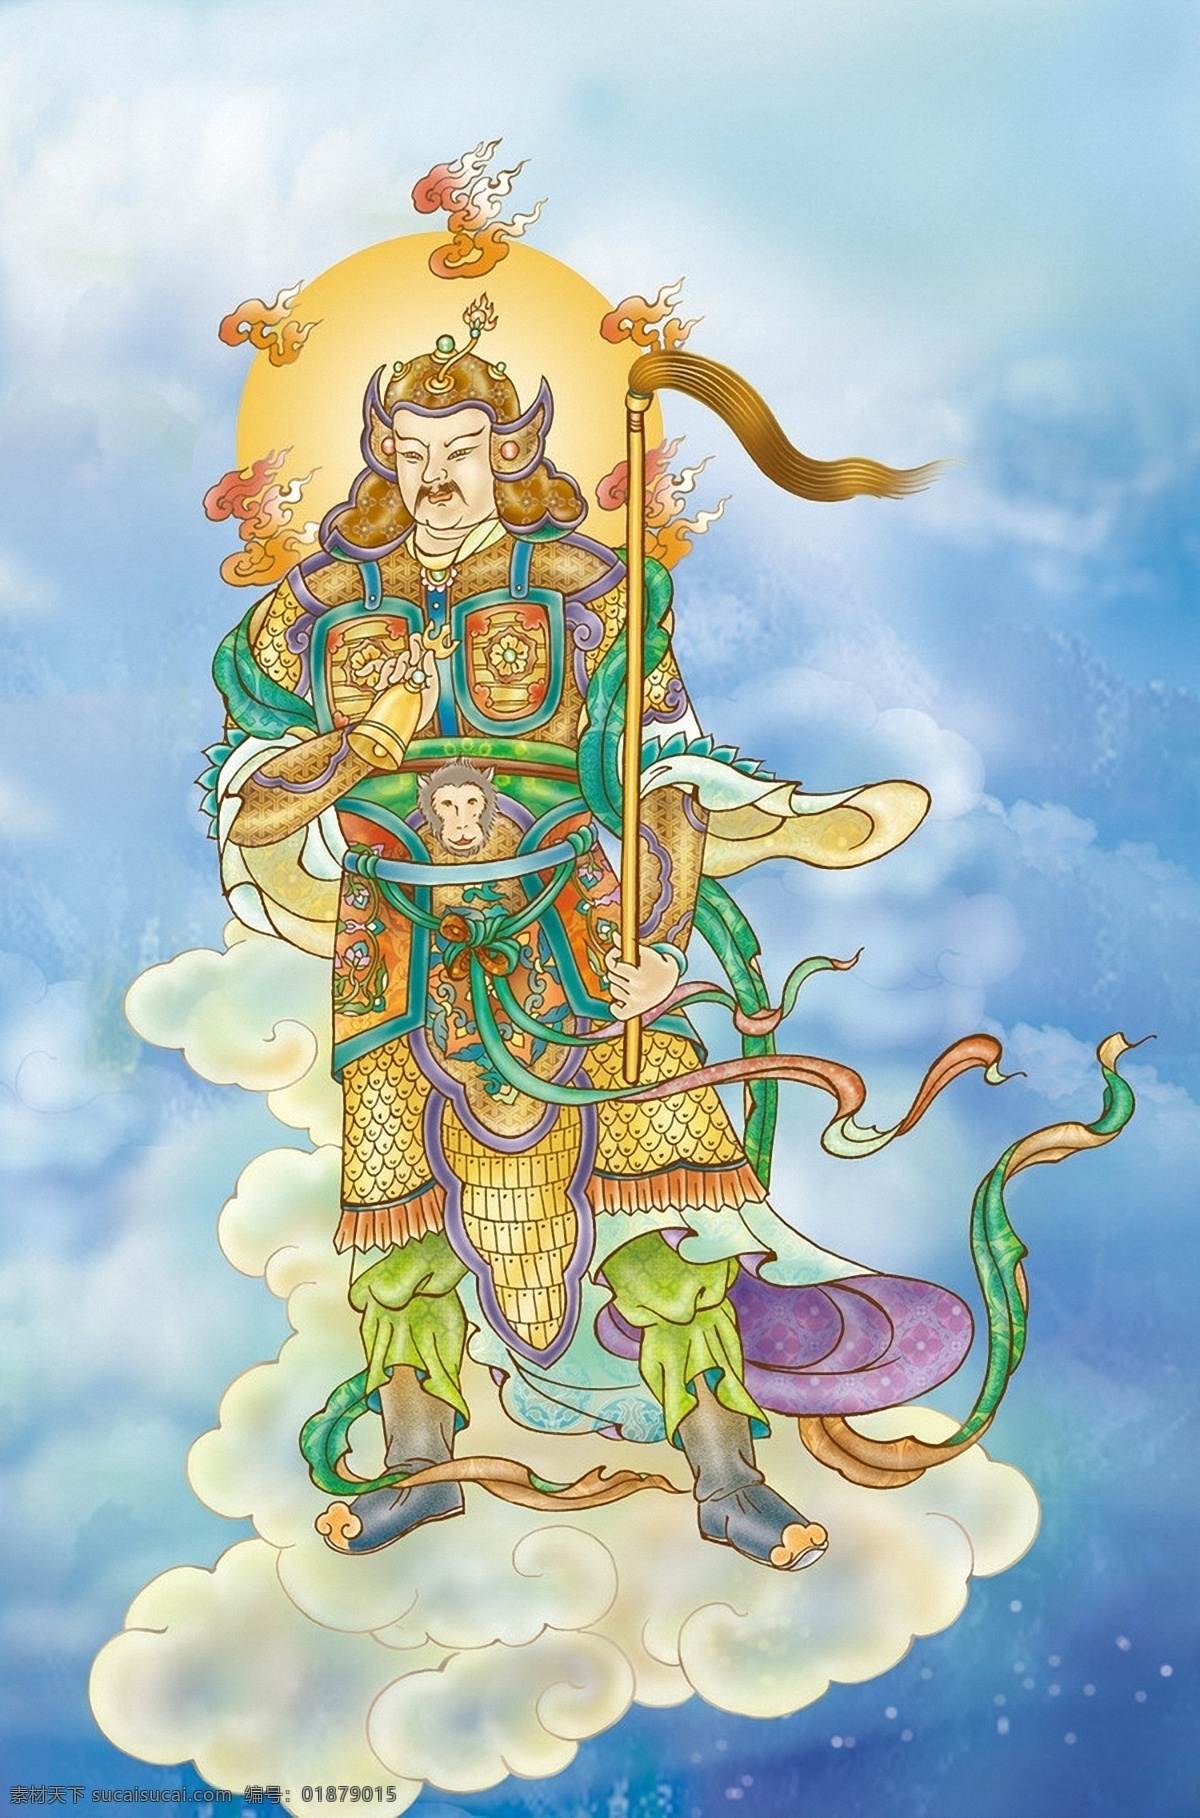 十 二 药叉 达罗 大将 因达罗大将 佛 佛像 云朵 云端 光芒 佛教 宗教信仰 神佛 佛像佛文化 文化艺术